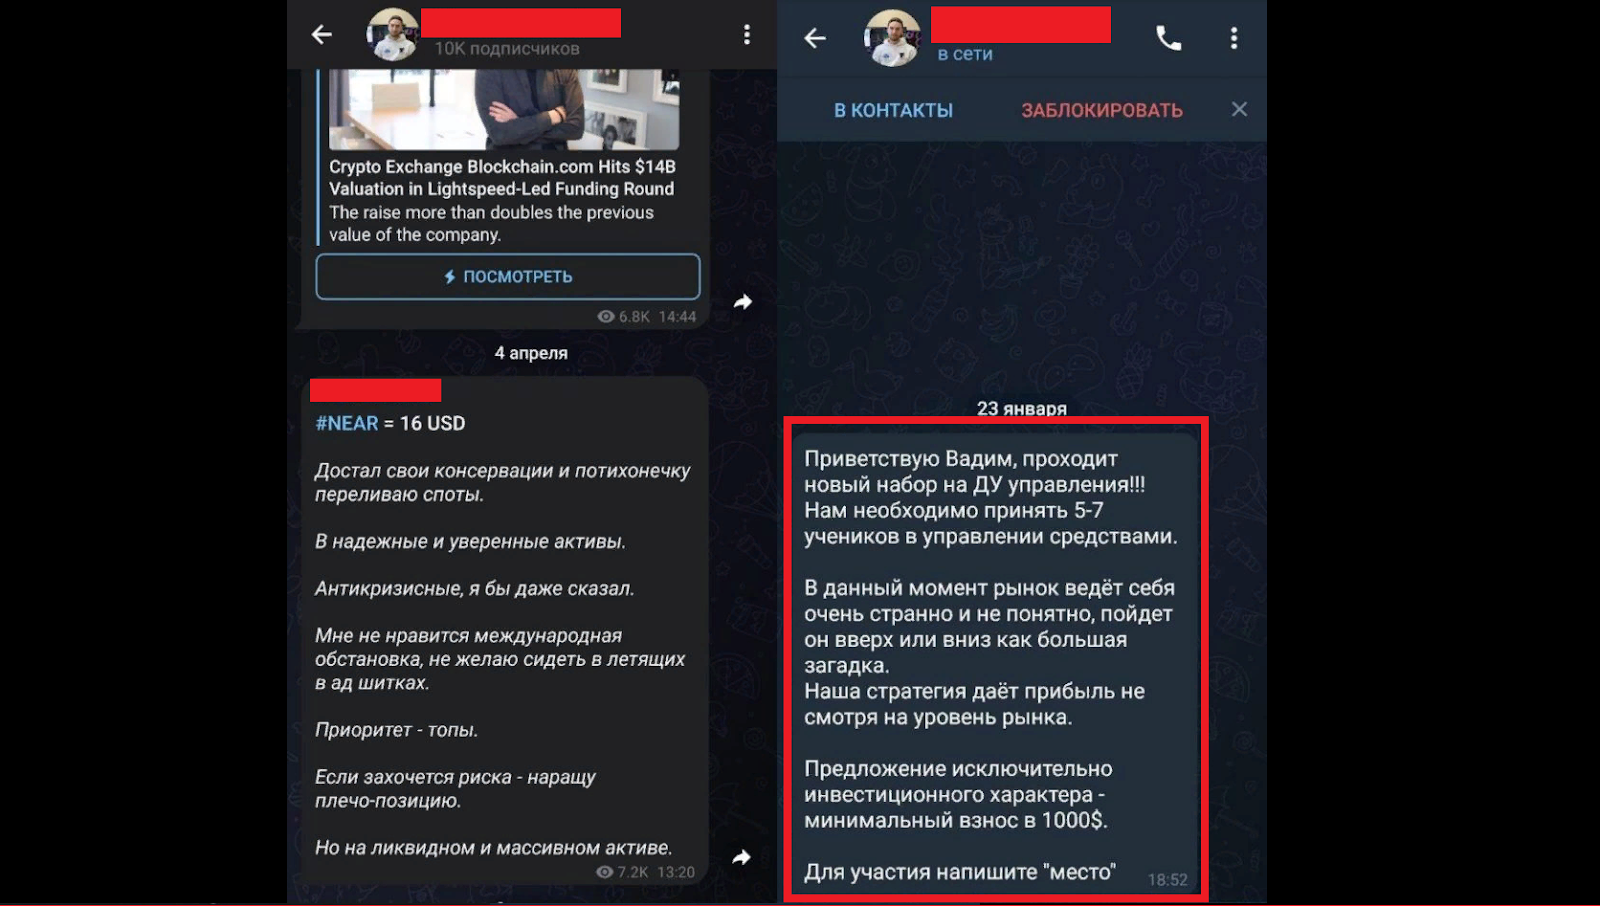 Примеры публикации "результатов" псевдотрейдеров в Telegram-сообществах.